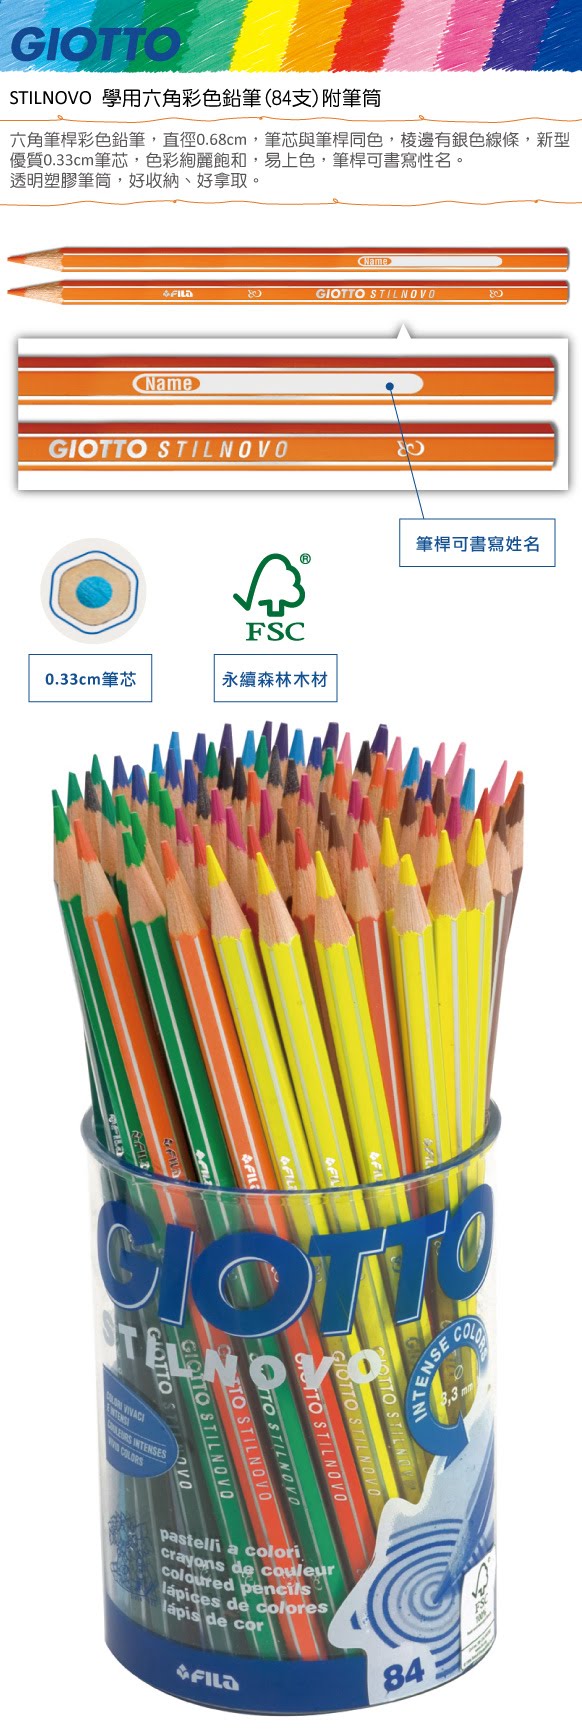 義大利GIOTTO】516500 STILNOVO 學用六角彩色鉛筆附筆筒84支/筒| 永昌